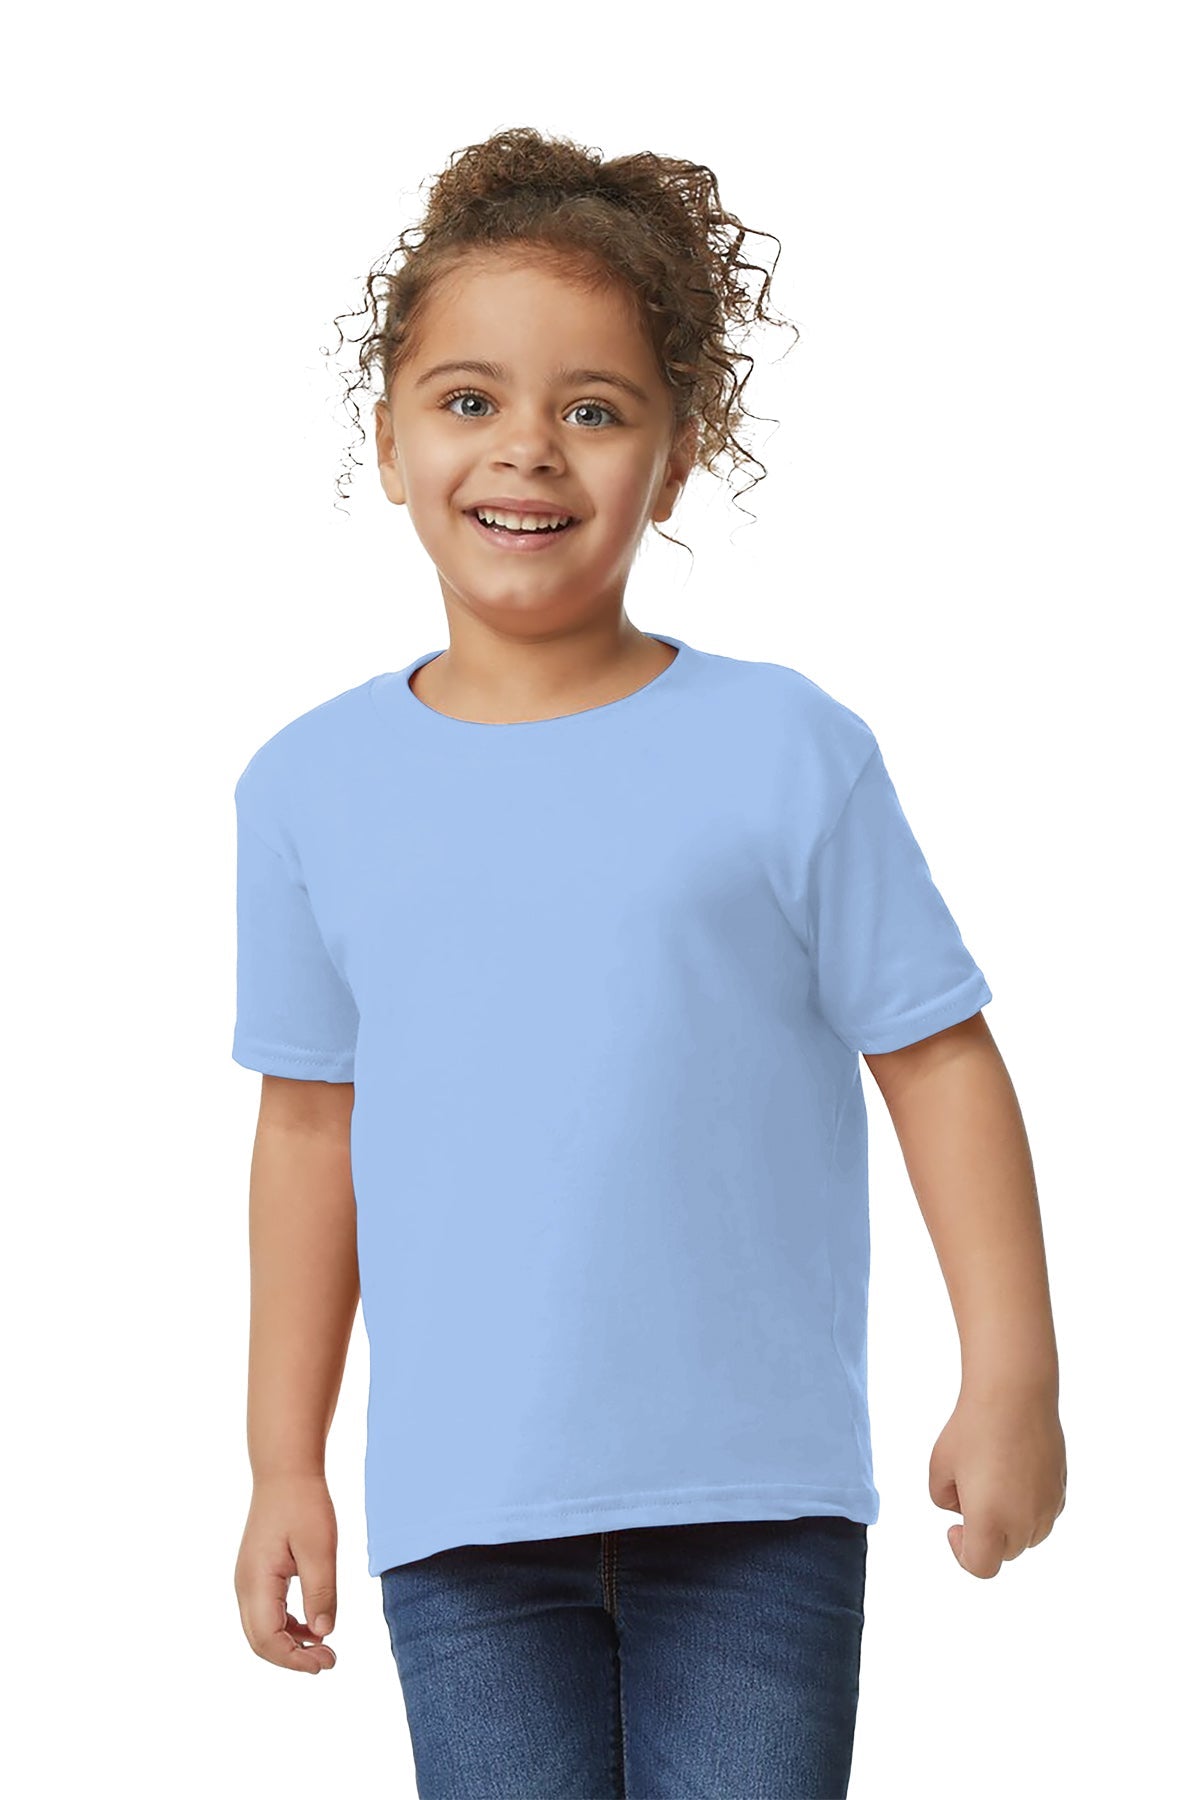 Gilden 5100P Toddler T-Shirt 3T / Light Blue